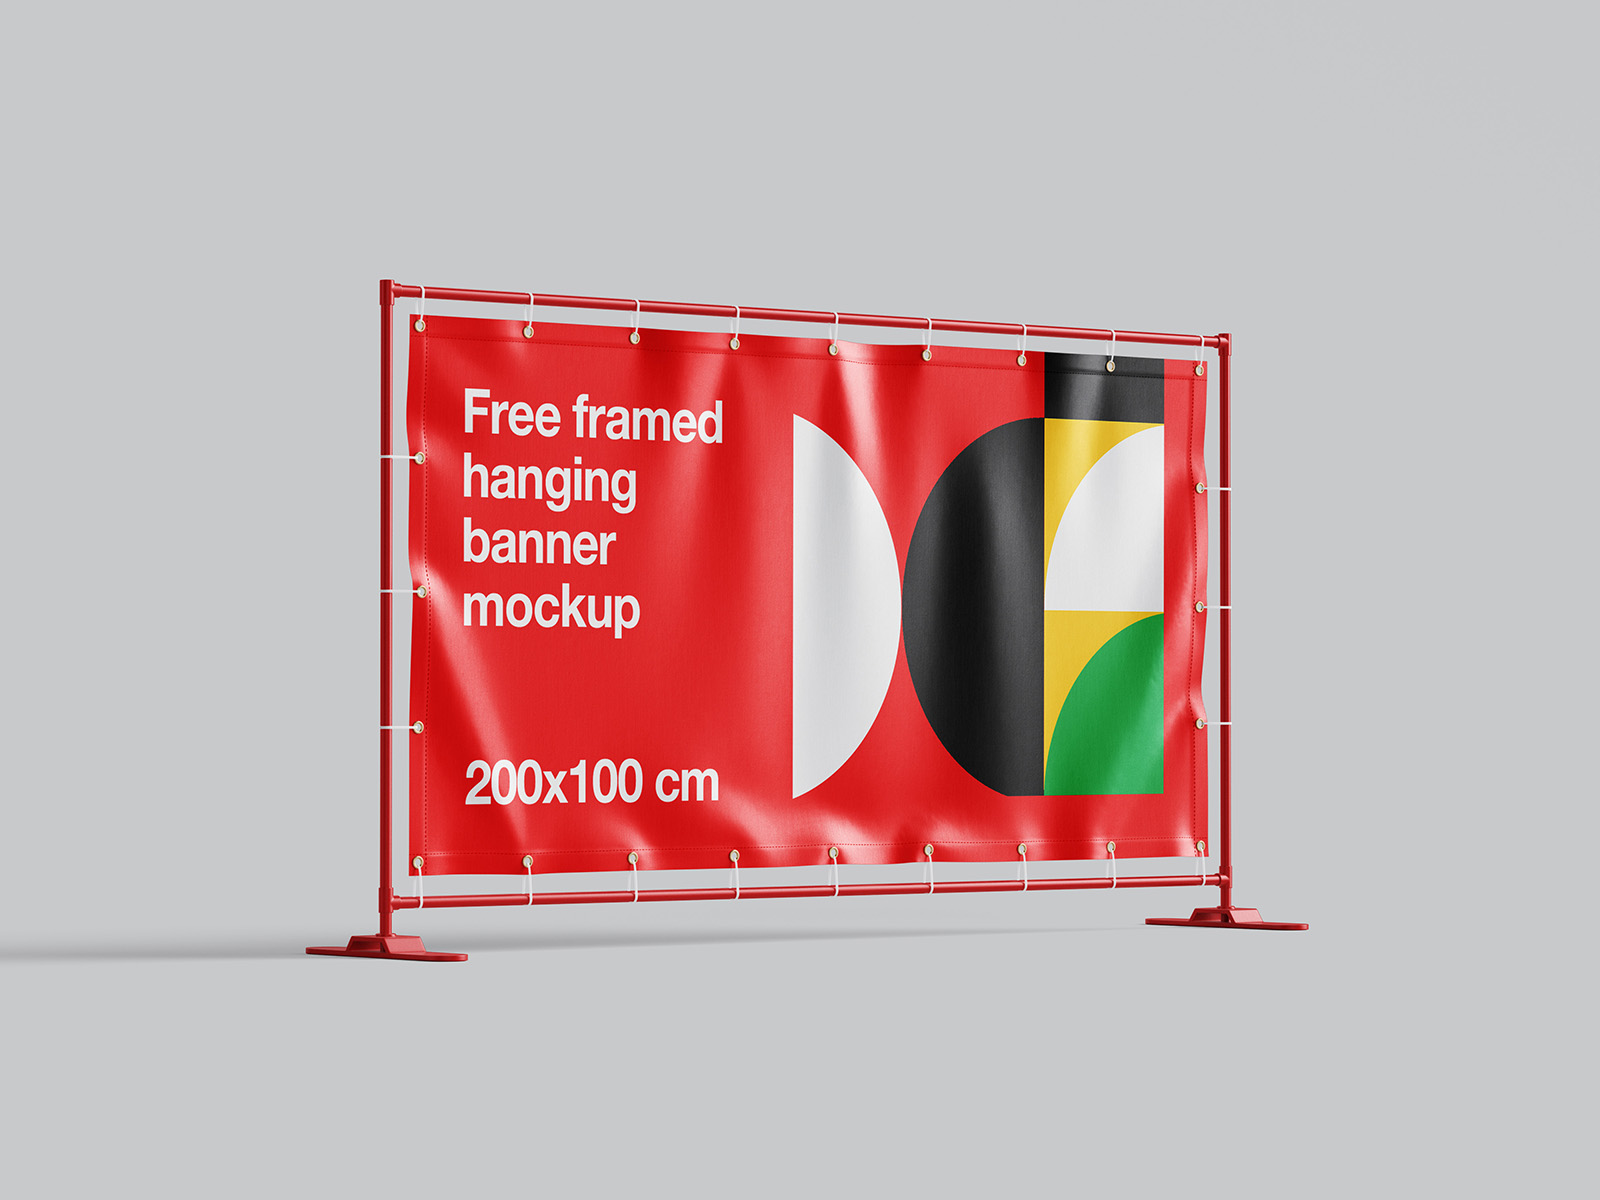 Framed hanging banner mockup